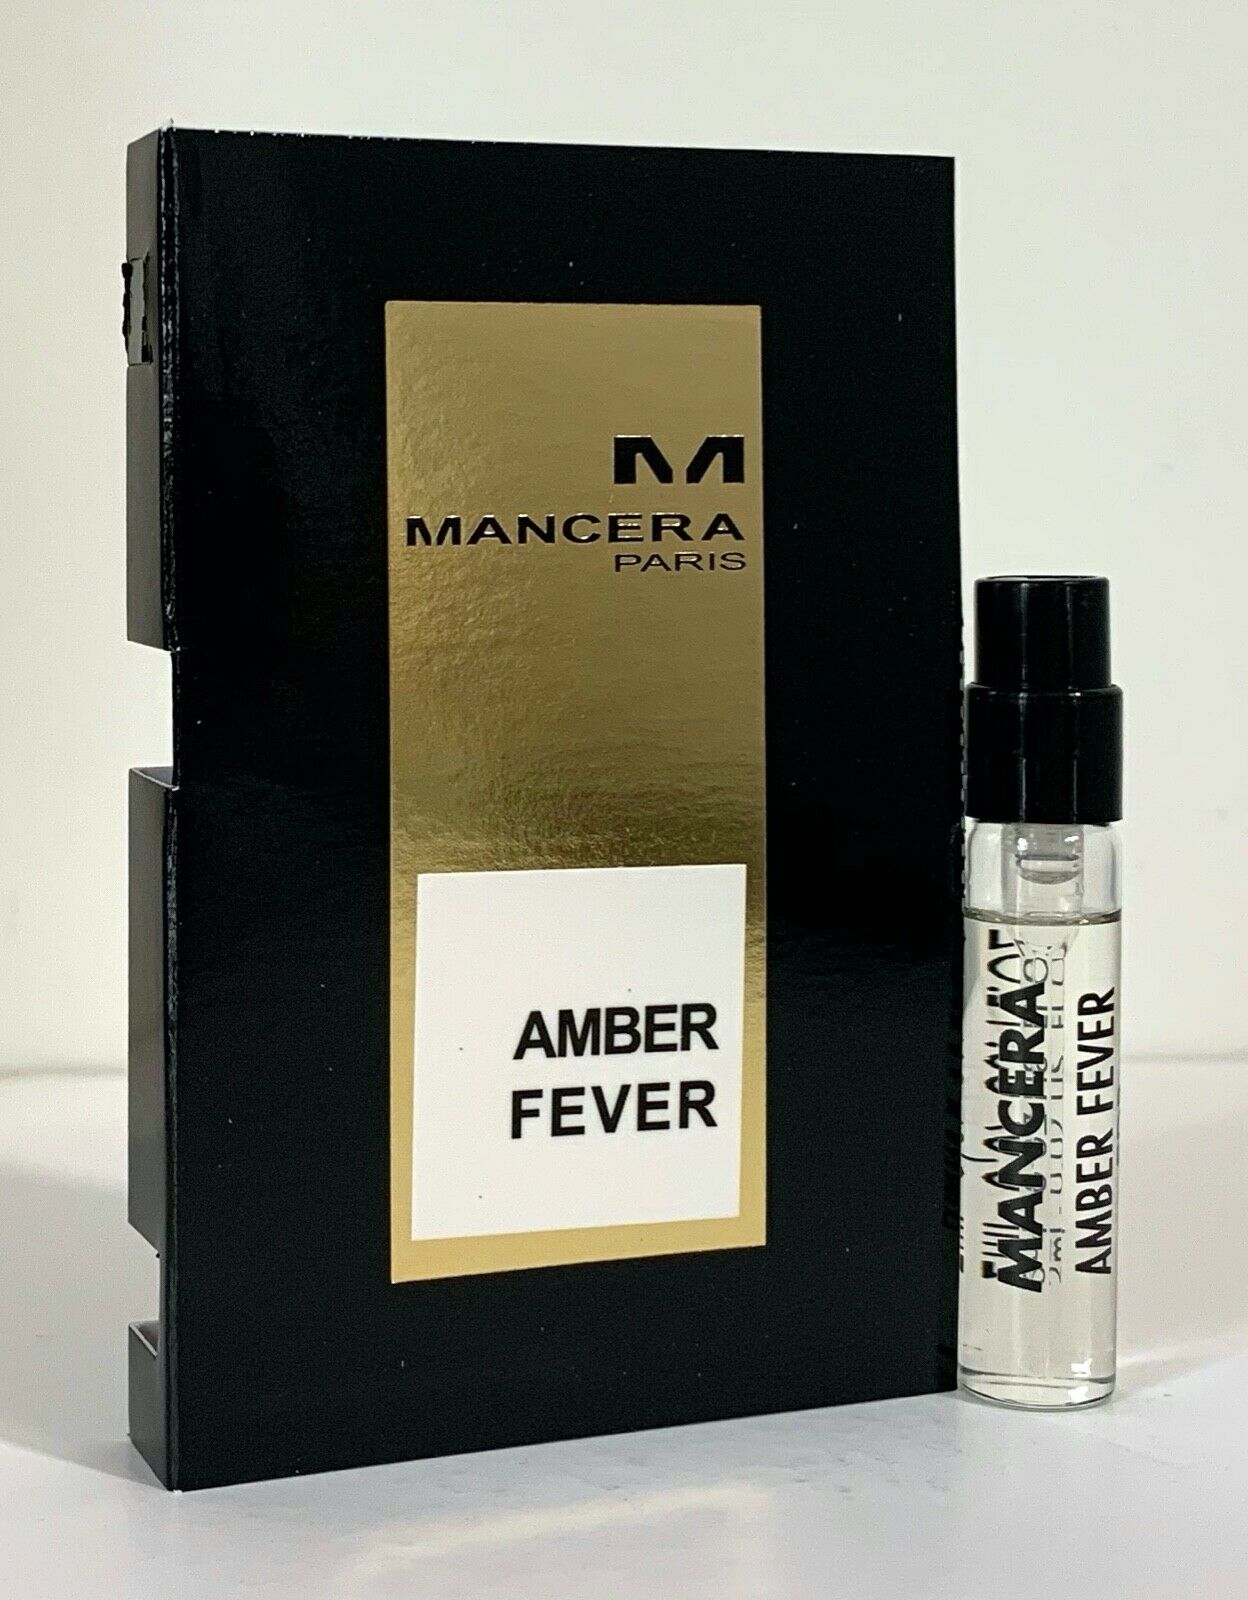 mancera Amber Fever virallinen tuoksunäyte 2ml 0.06 fl. oz., Mancera Amber Fever 2 ml 0.06 fl. oz. virallinen hajusteen näyte